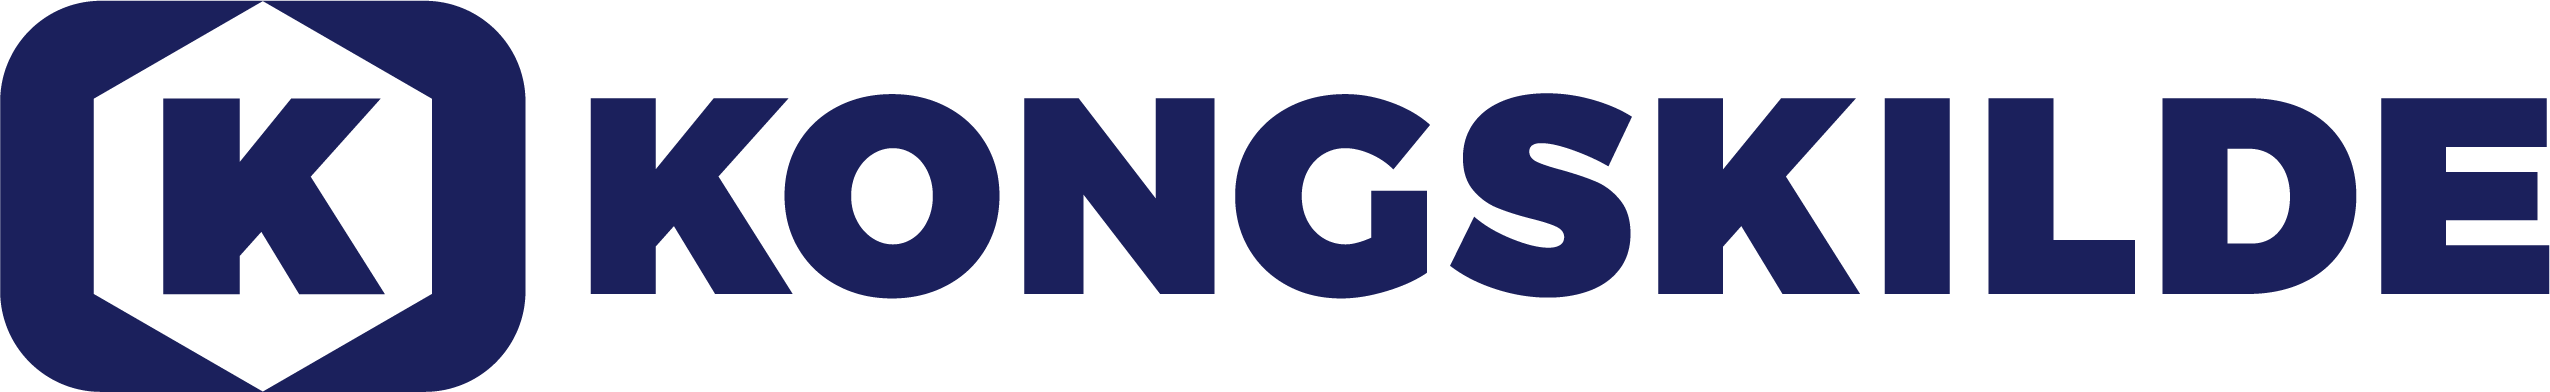 Kongskilde-logo_notag_blue